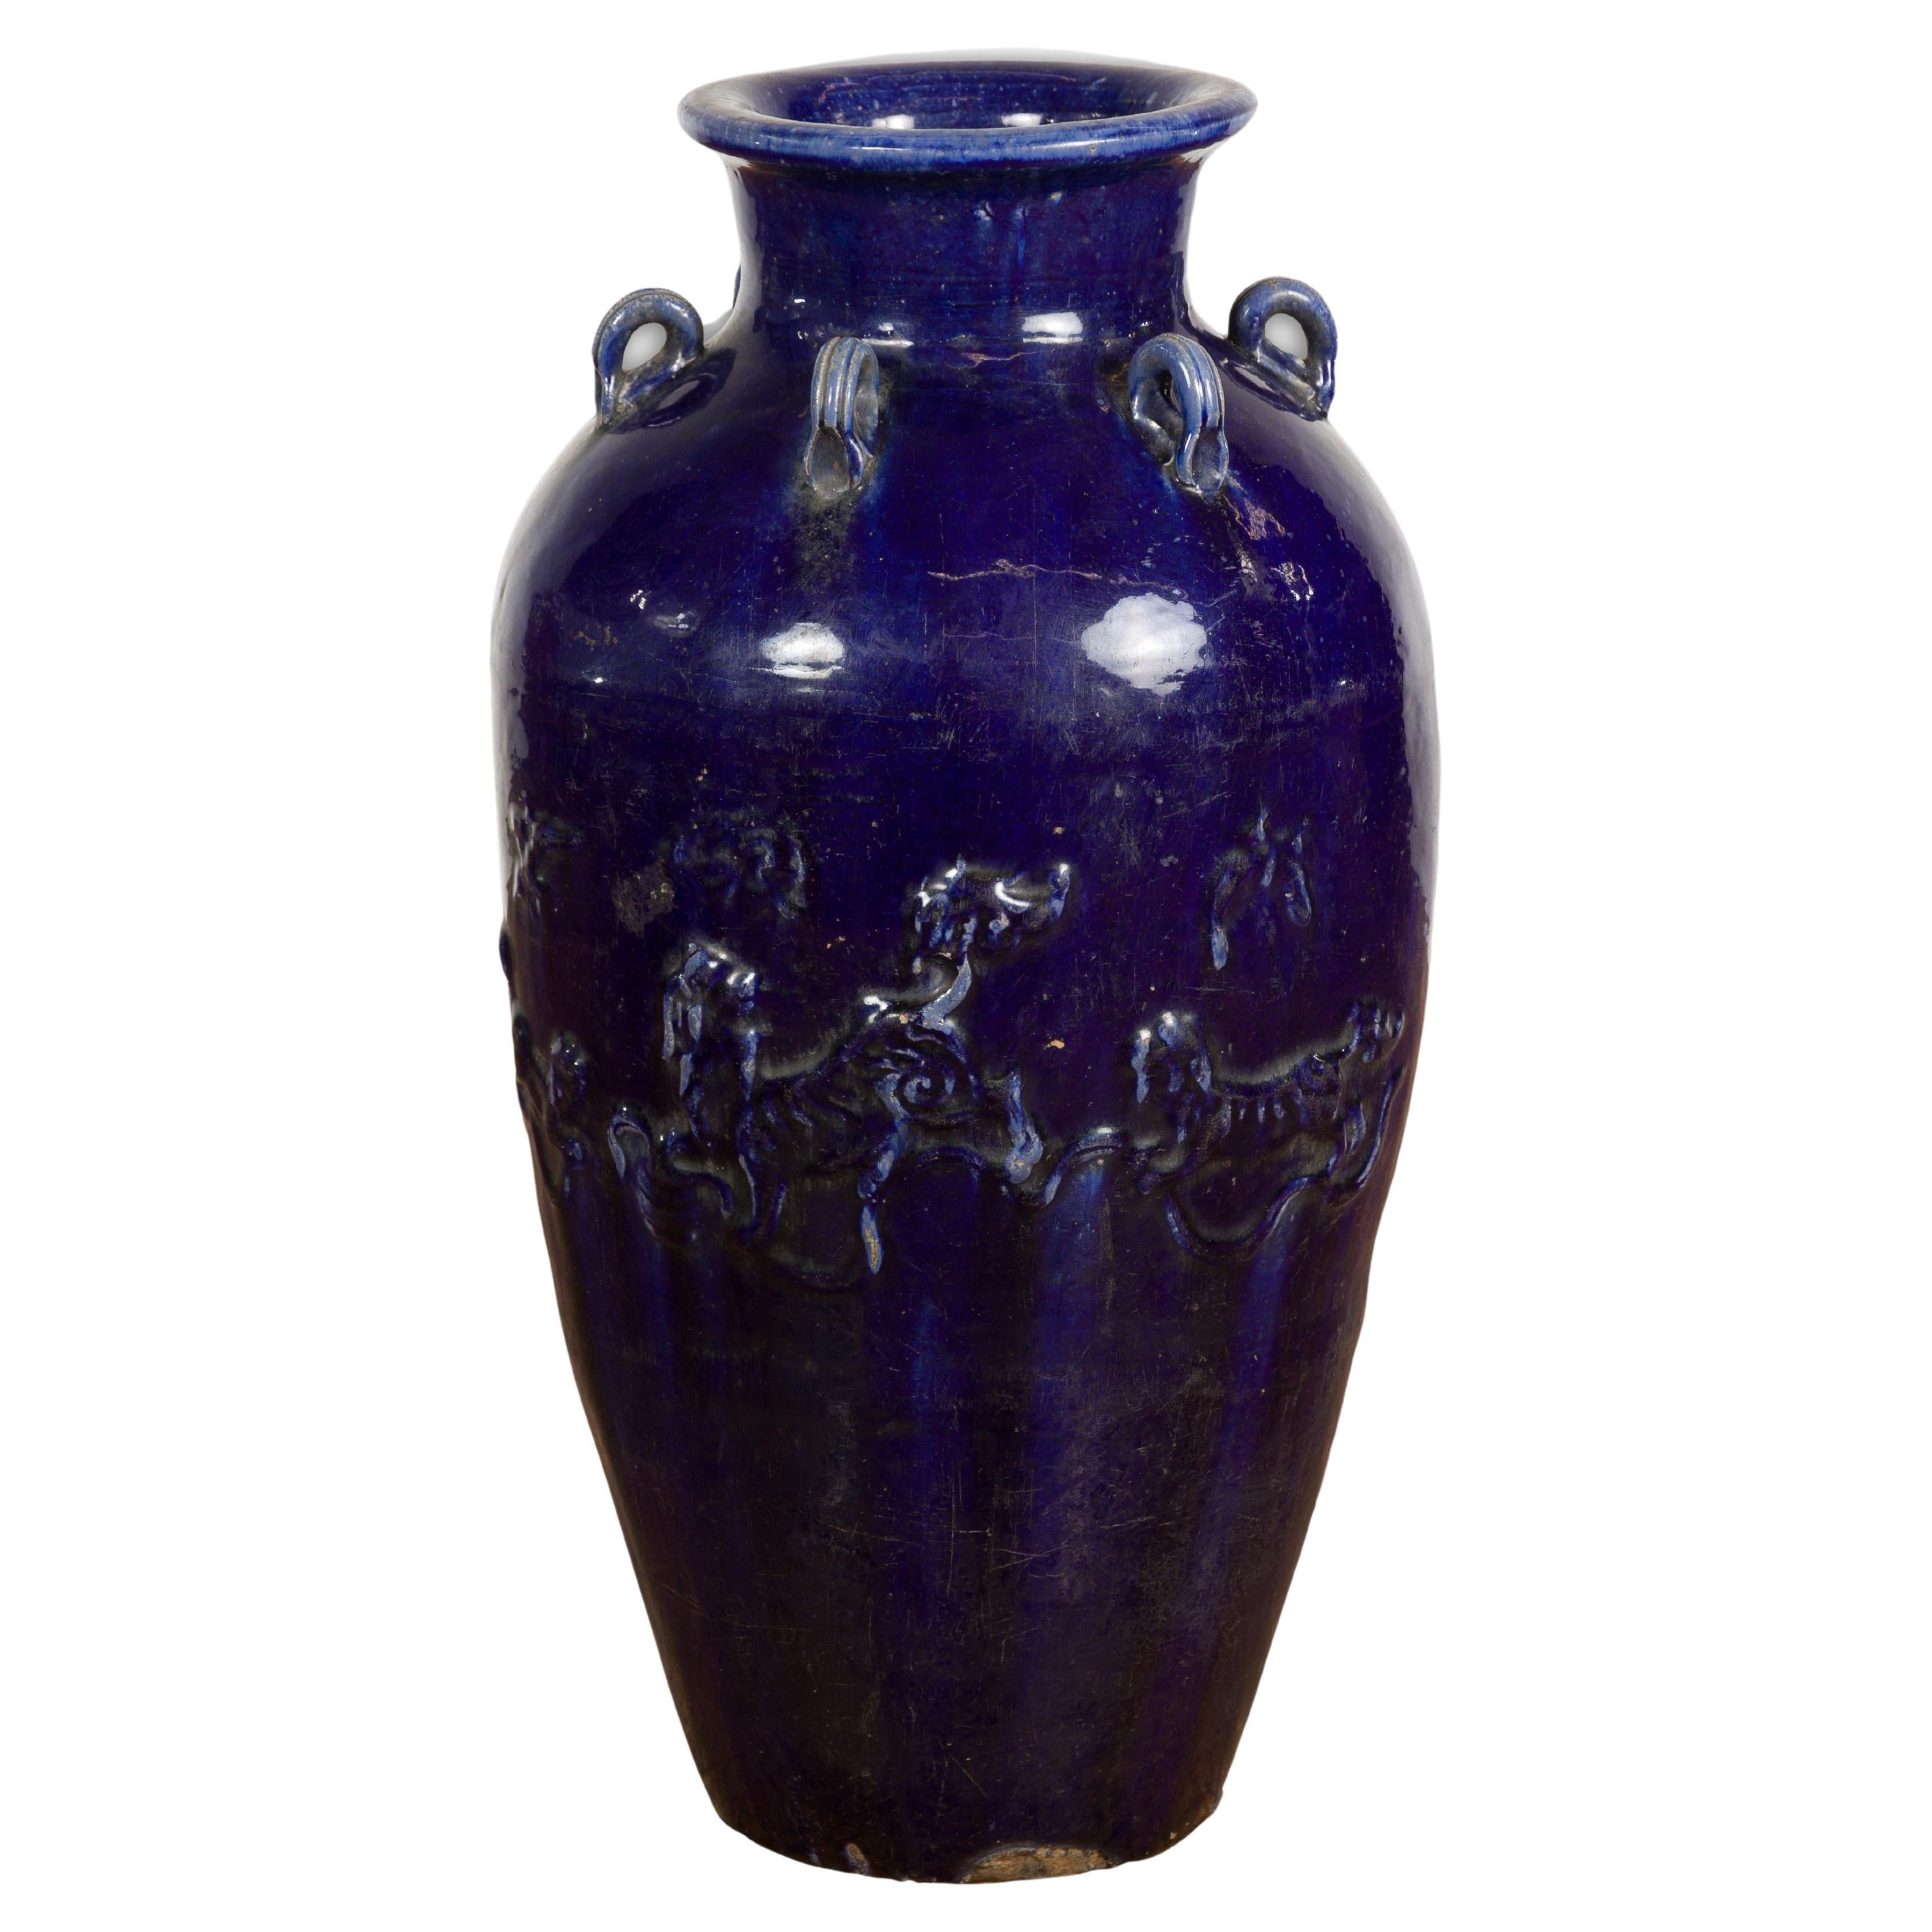 Grande vaso Martaban blu cobalto tailandese del XIX secolo con motivi in rilievo